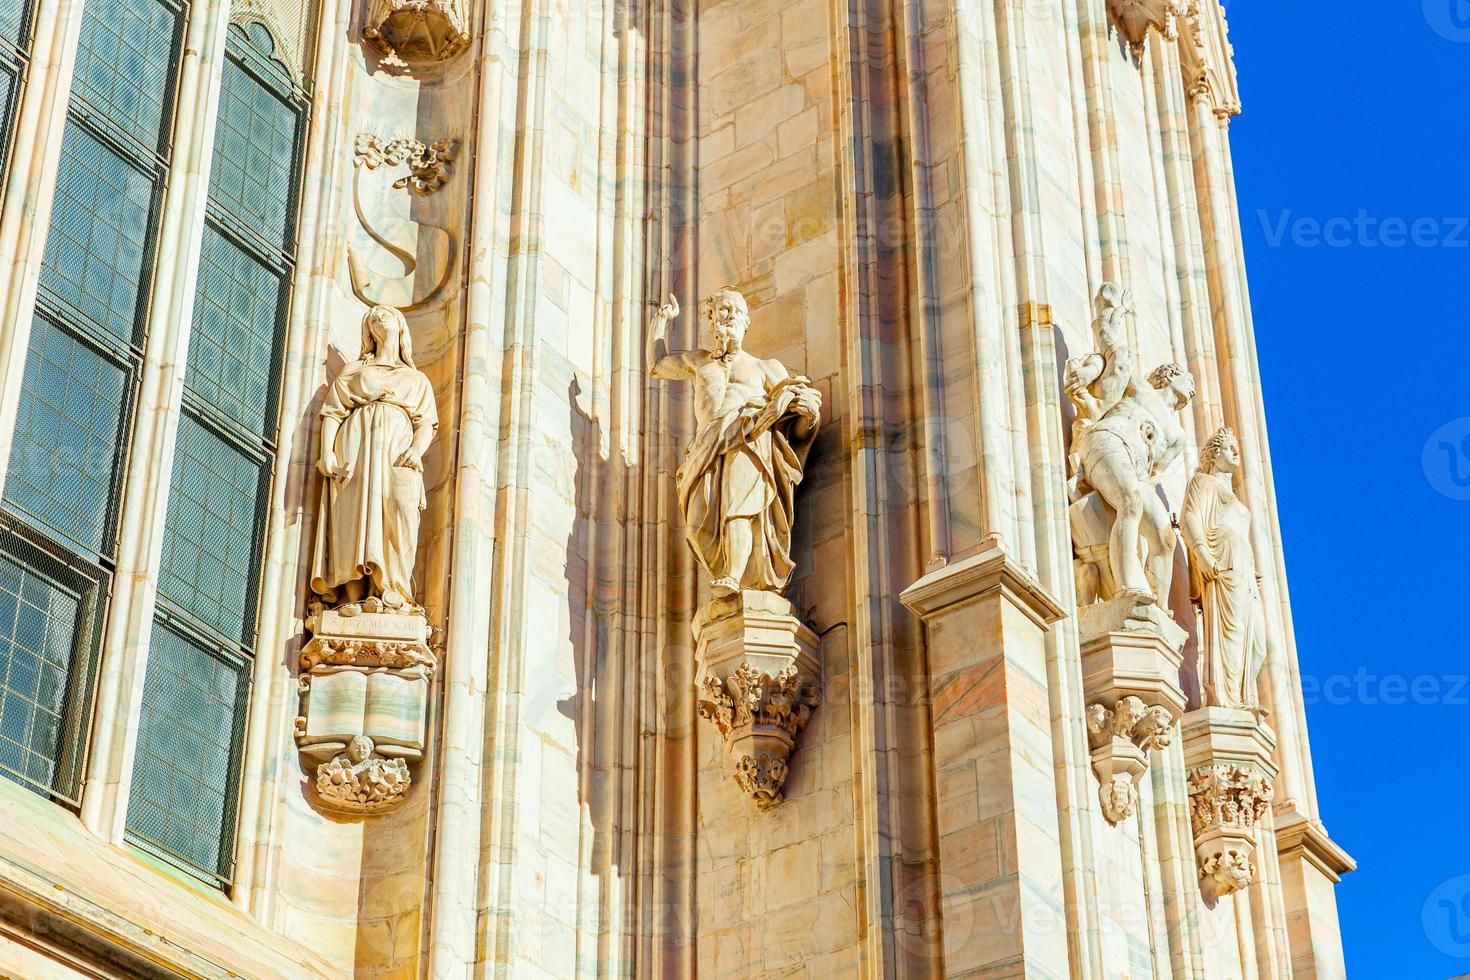 gevel van de kathedraal van Milaan Duomo di Milano met gotische torenspitsen en witmarmeren beelden. top toeristische attractie op piazza in milaan, lombardia, italië. brede hoekmening van oude gotische architectuur en kunst. foto